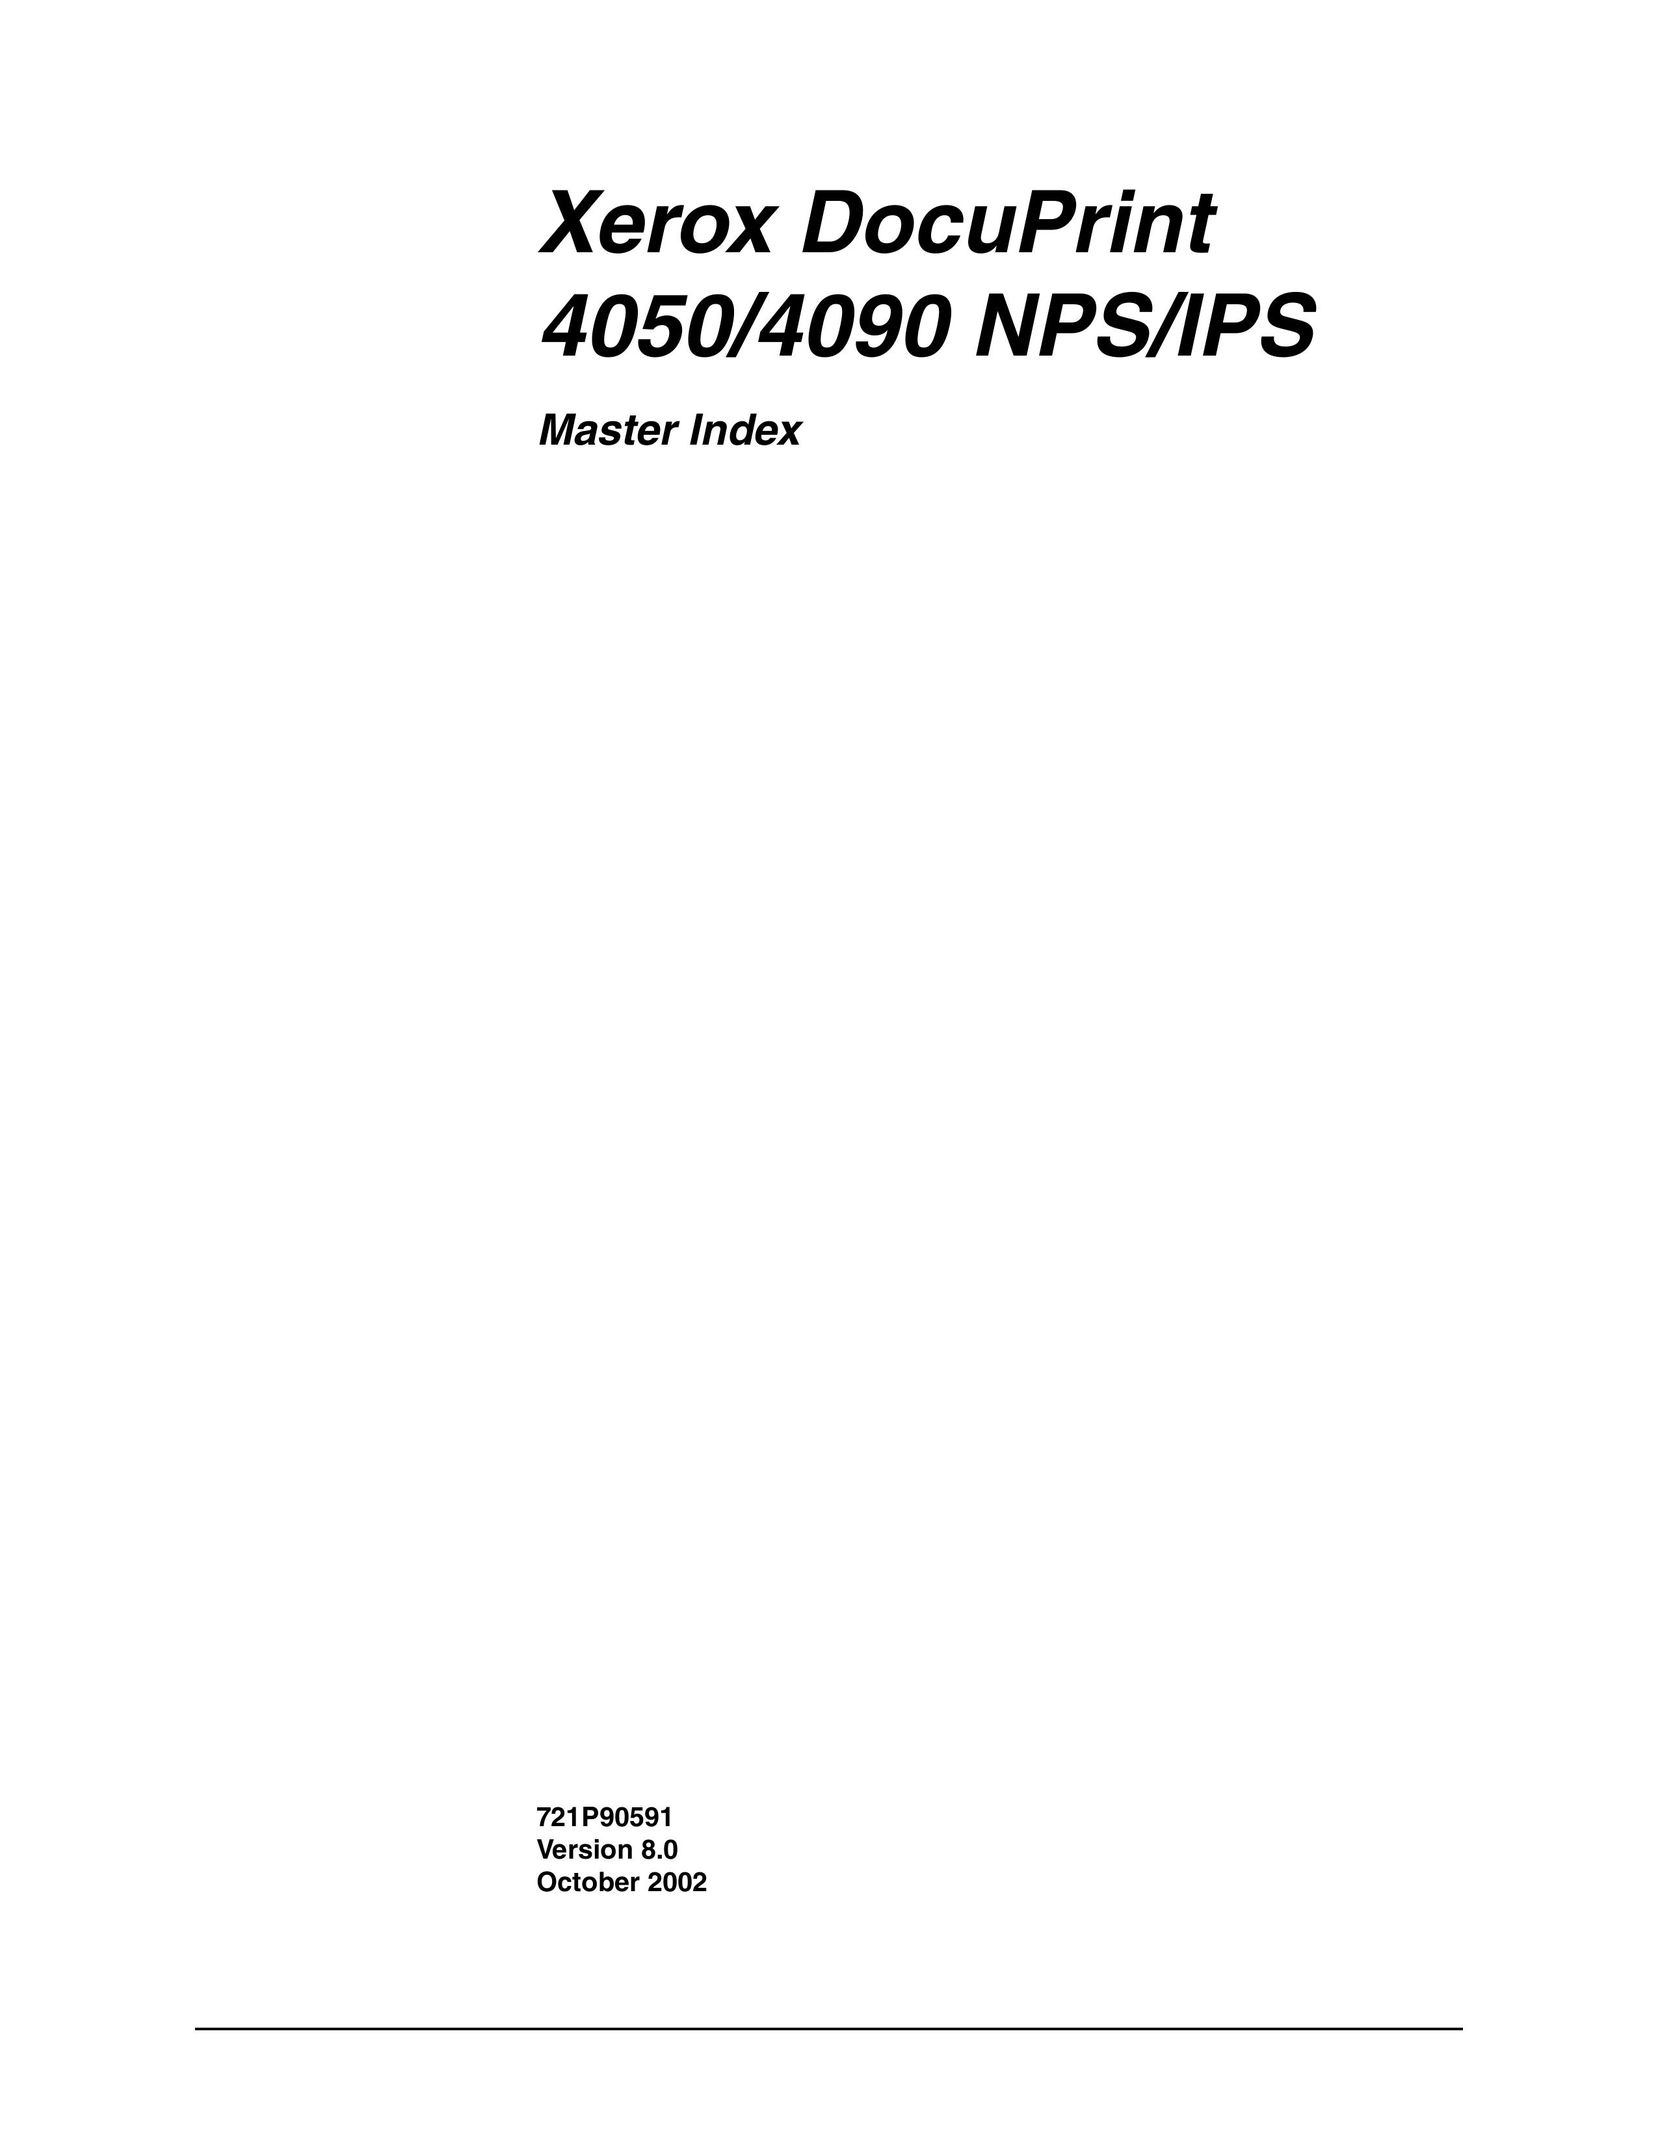 Xerox 4050/4090 NPS/NPS Copier User Manual